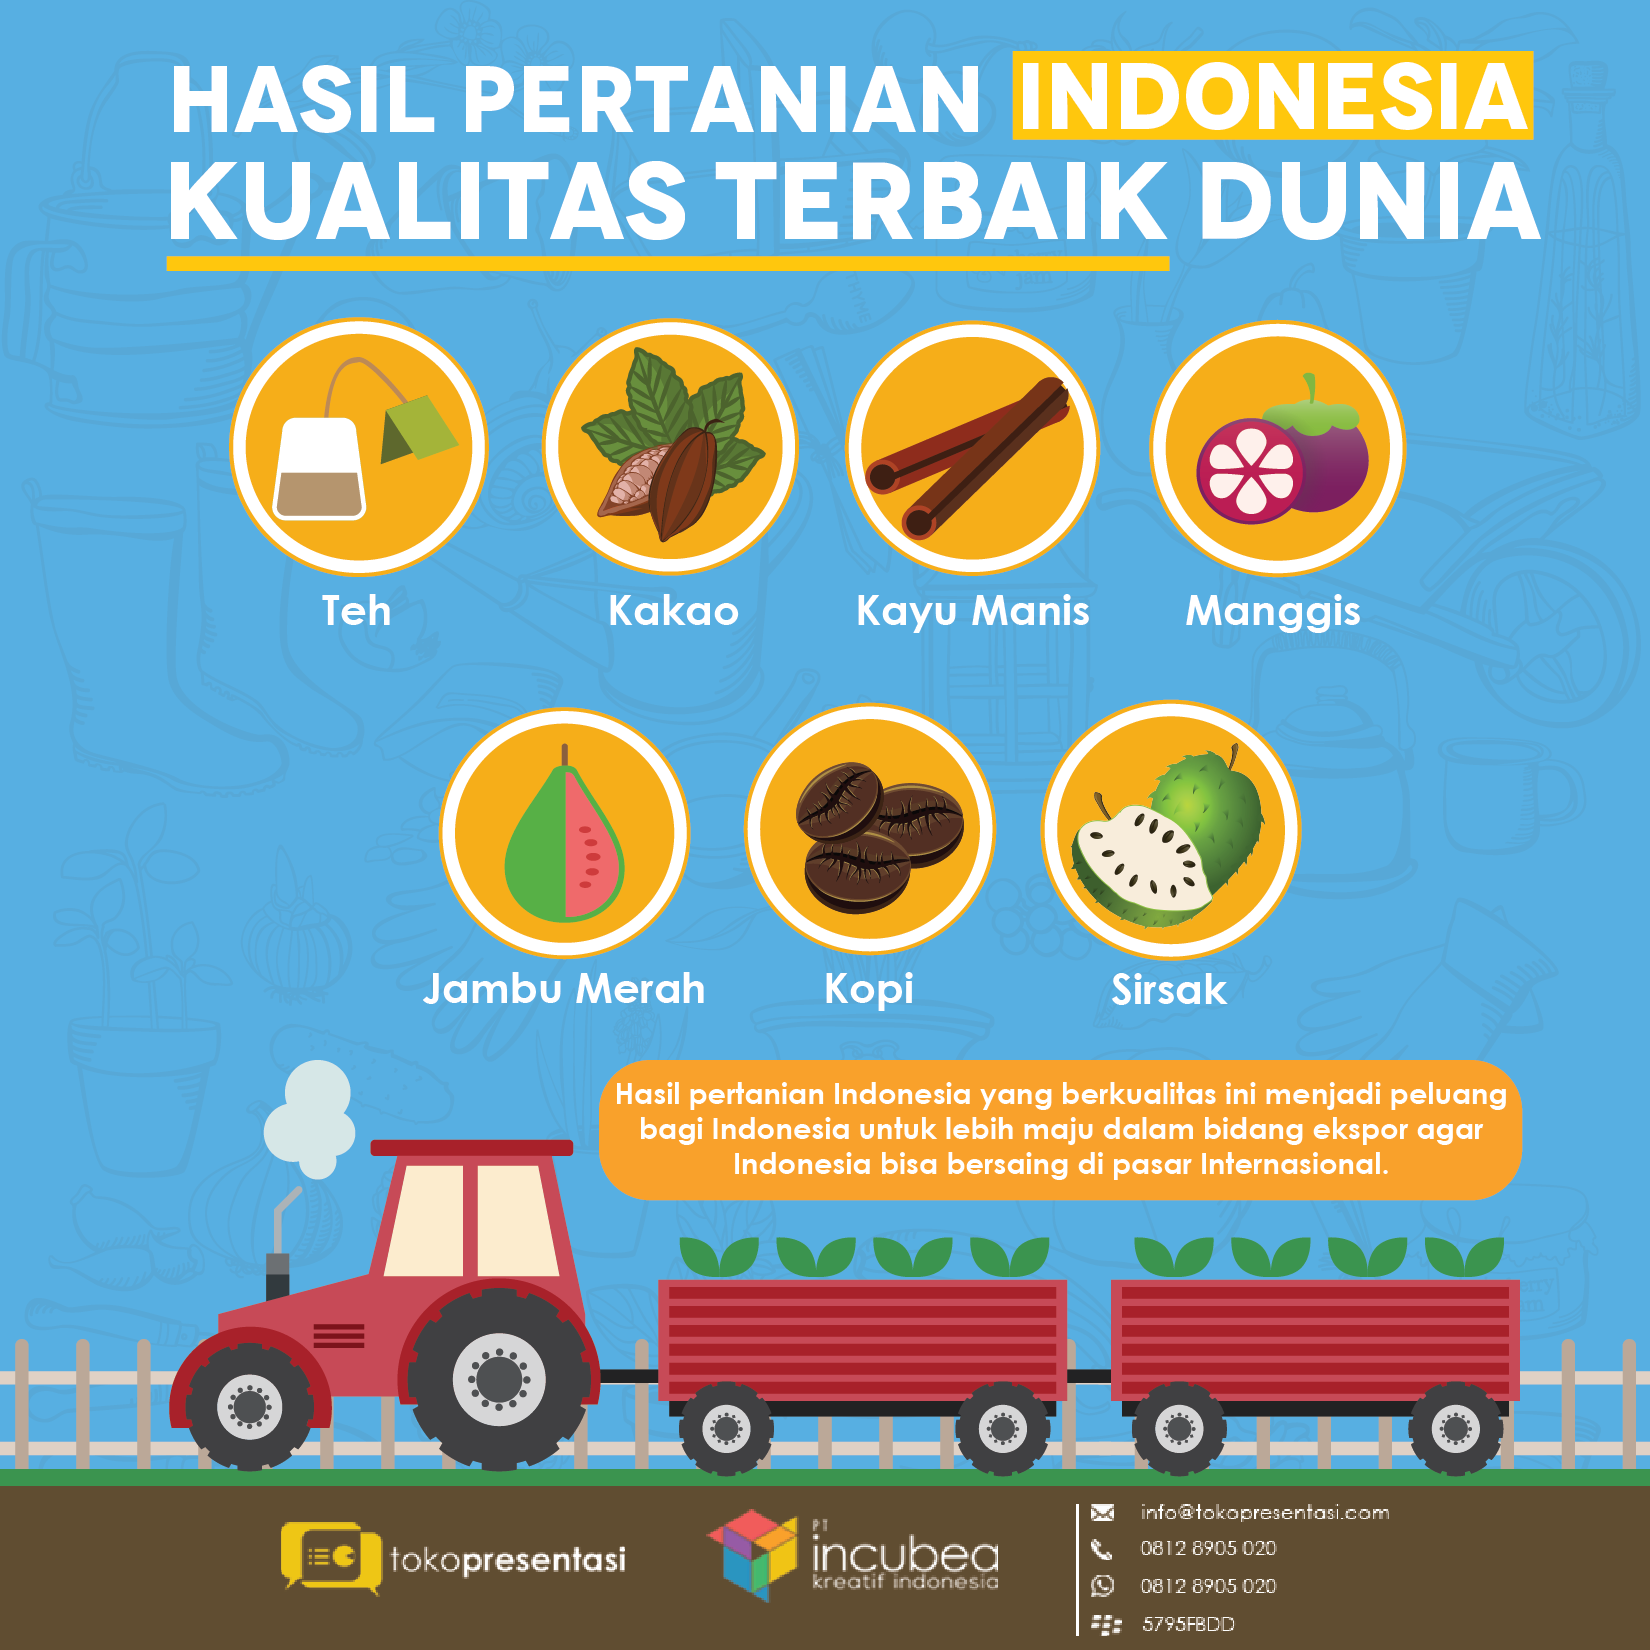 Infografis hasil pertanian indonesia tokopresentasi.com